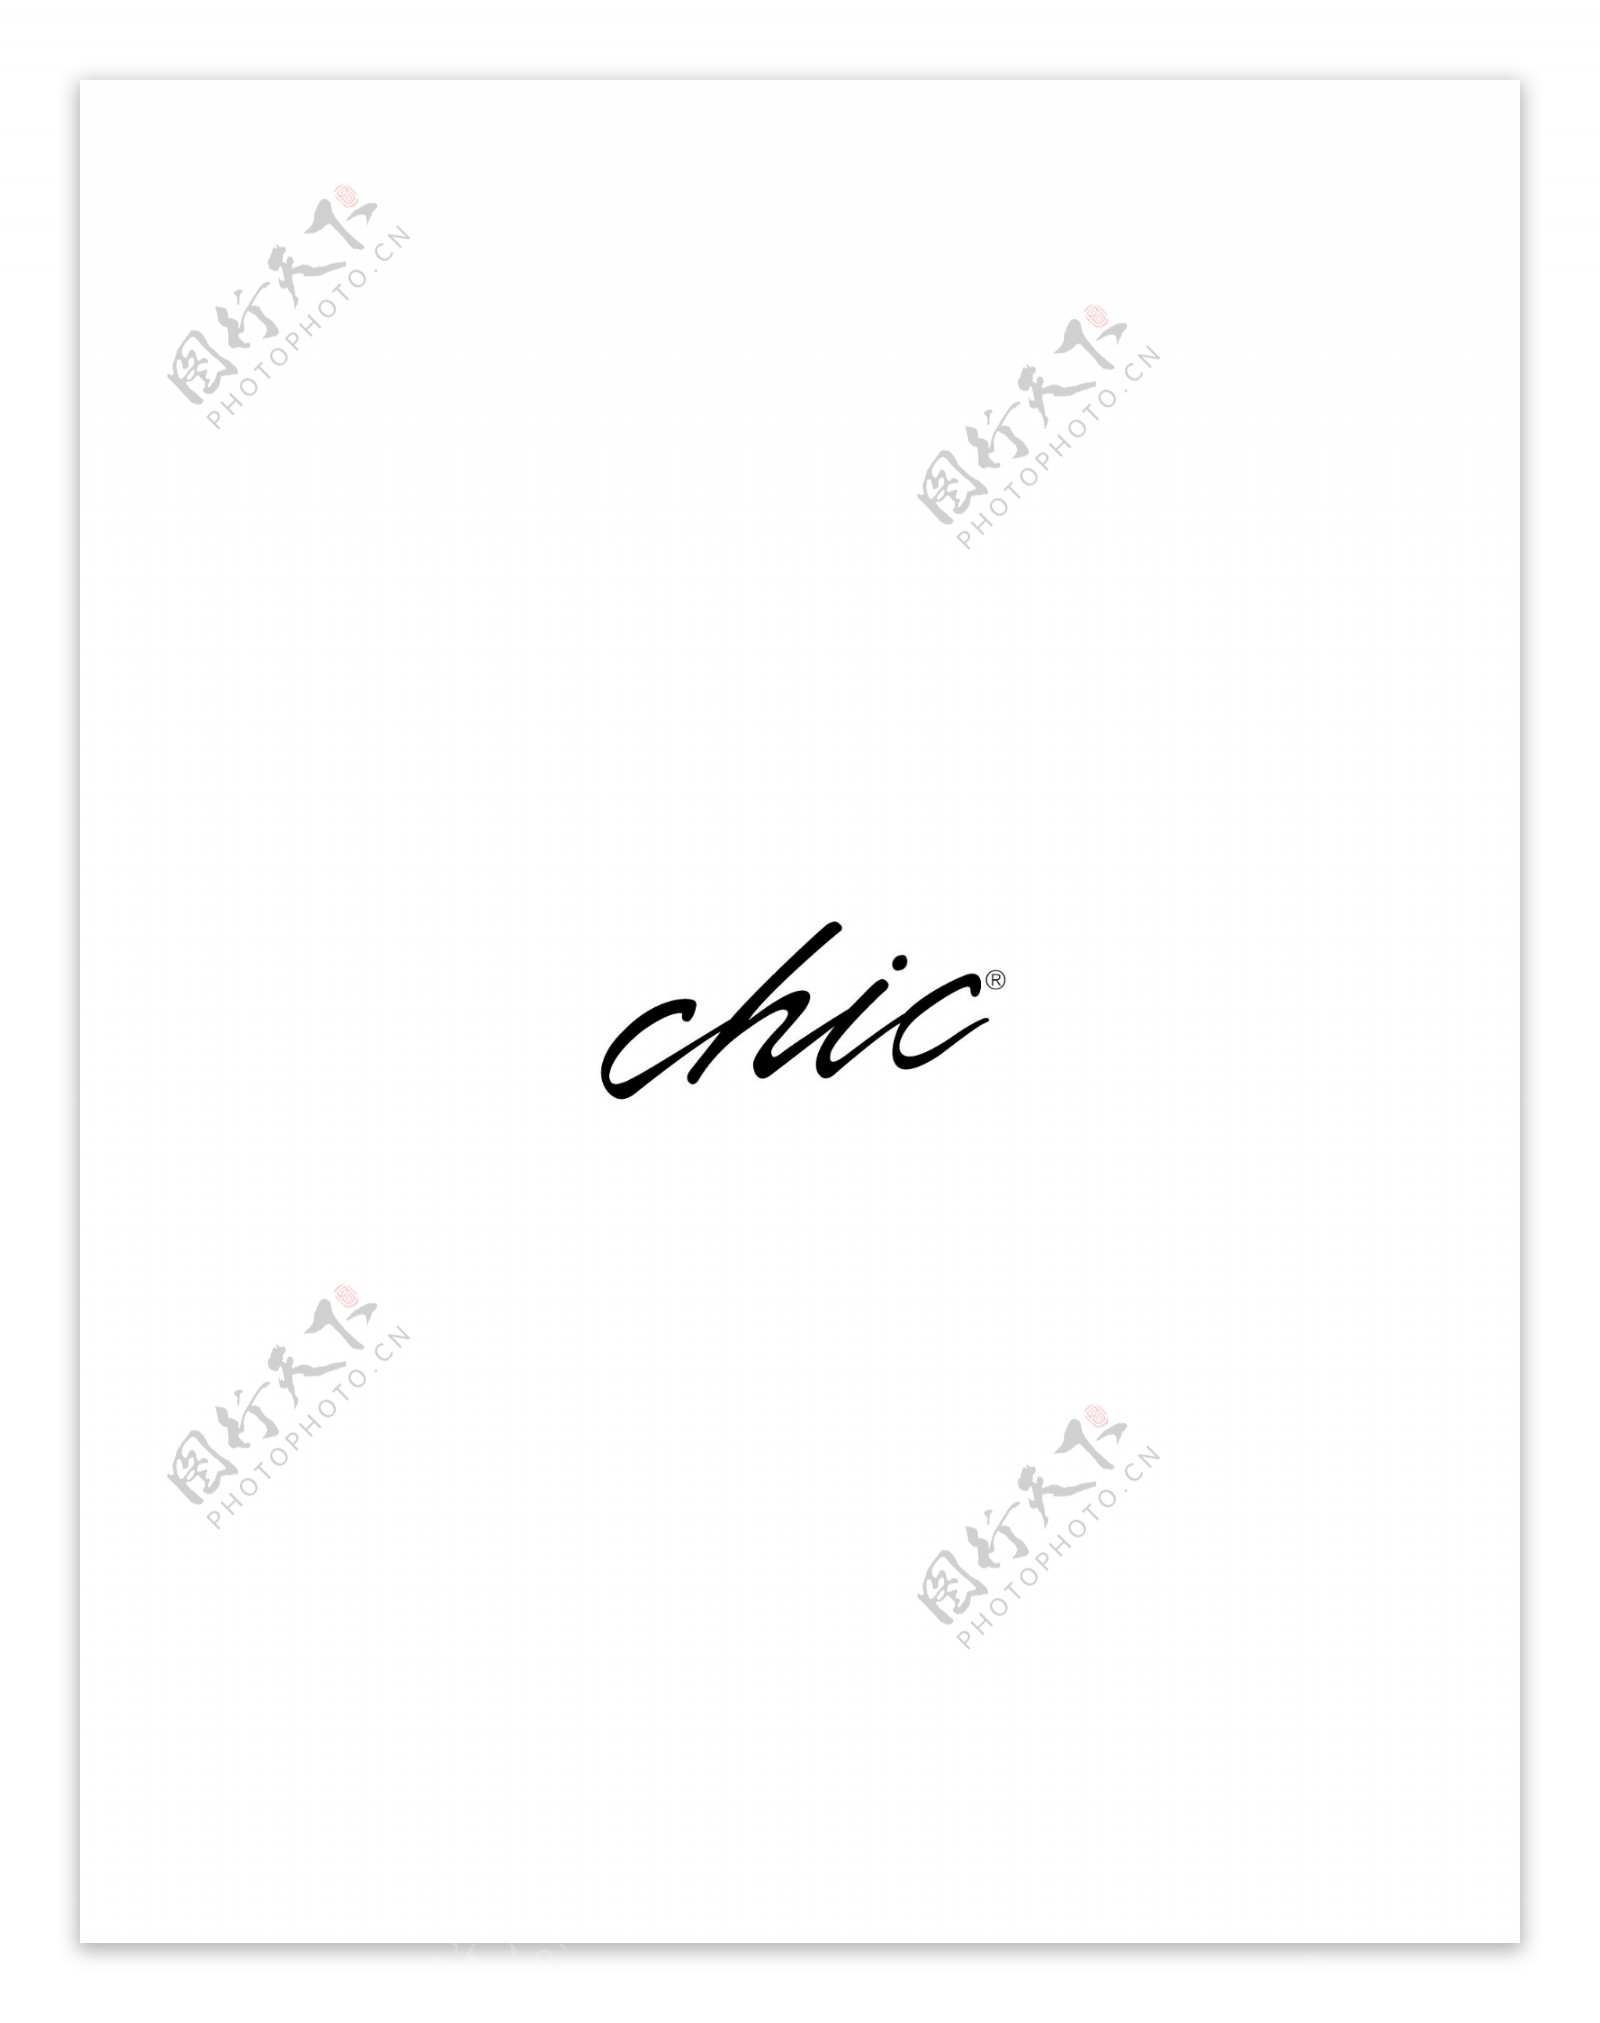 Chiclogo设计欣赏Chic服饰品牌标志下载标志设计欣赏